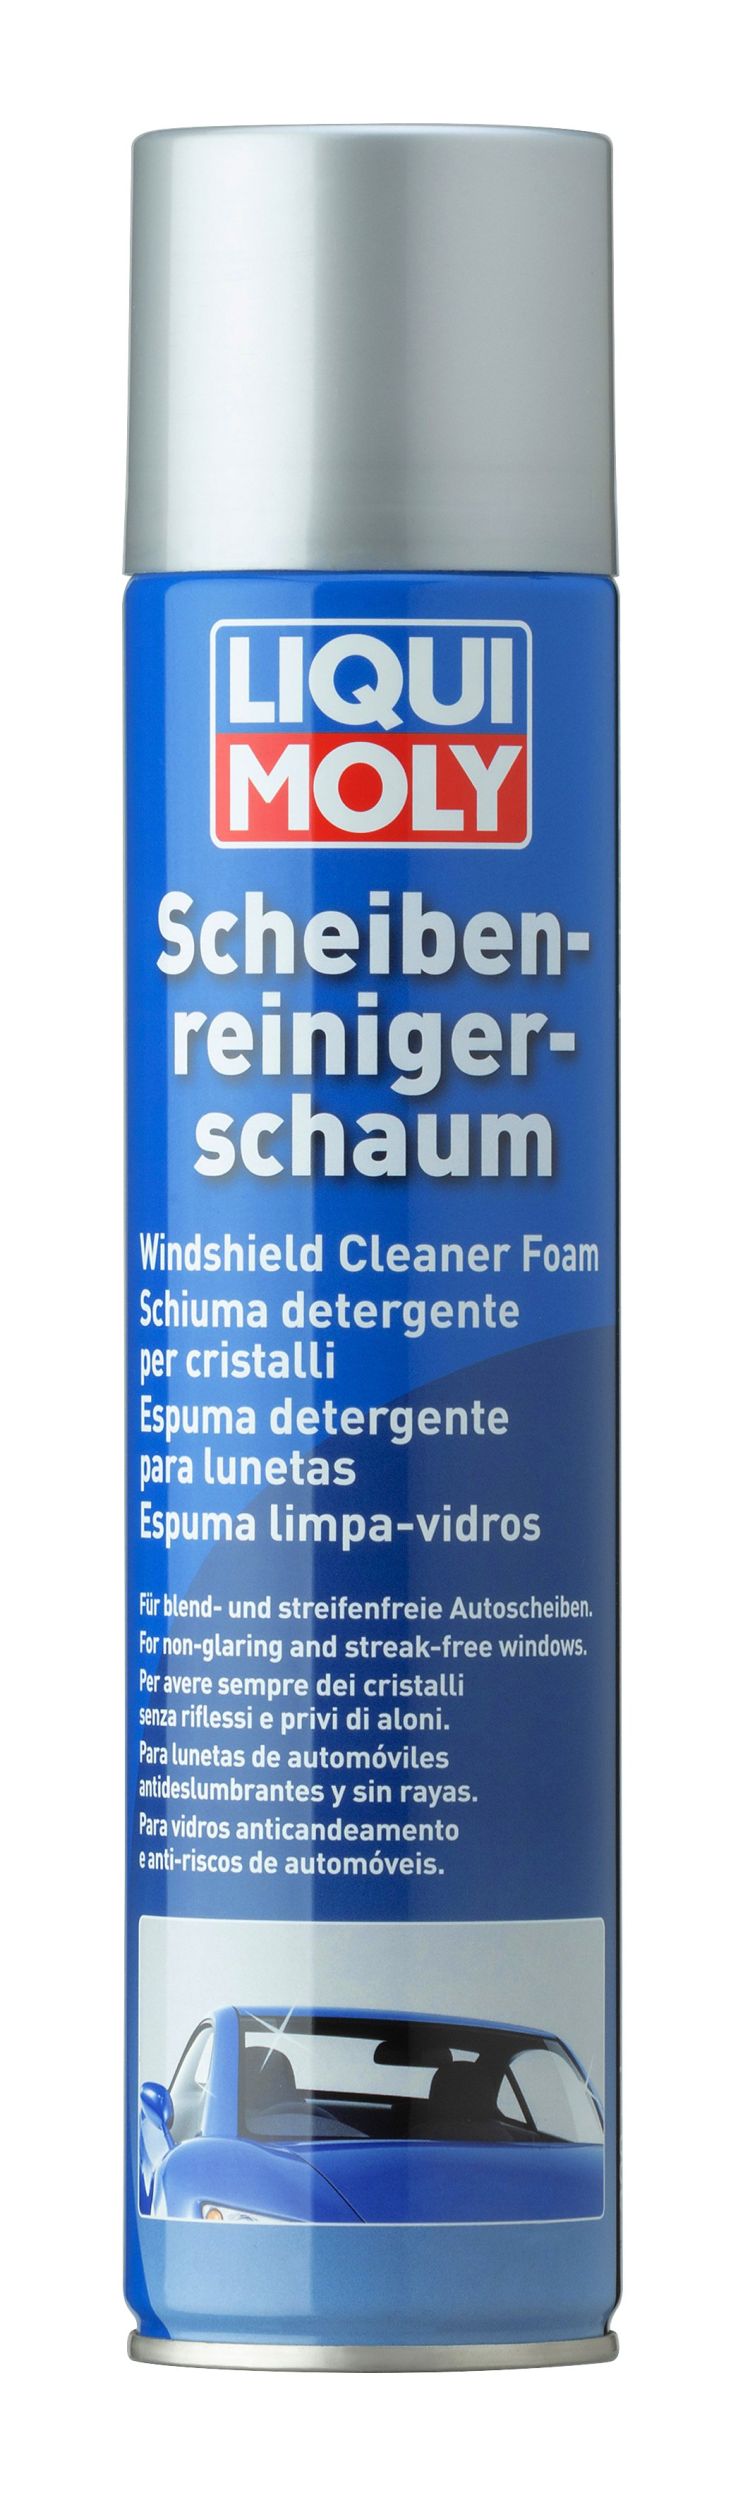 1512, Detergent pentru sticla,
Пена для очистки стекол Scheiben-Reiniger-Schaum 300мл
Используется для быстрой очистки внутренних и внешних поверхностей стекол транспортных средств, фар и зеркал. Отлично подходит для очистки тонирующих пленок.
Свойства
Активные чистящие компоненты в составе средства, воздействуют на загрязнения проникая в их структуру и разлагают их на составляющие компоненты, это позволяет качественно и быстро удалить любые загрязнения с поверхности не оставляя следов.
- Высокая эффективность чистки
- Быстрое действие
- Безопасна для плексигласа
- Нейтральна по отношению к резине, лакам и пластикам
Применение Scheiben-Reiniger-Schaum, позволяет быстро и качественно удалить загрязнения с поверхностей остекления автомобиля как с внешней стороны так и внутренней. также применяется для очистки приборной доски и мониторов установленных в автомобиле. Применение средства гарантирует чистоту поверхностей и препятствует скоплению пыли. Не оставляет разводов после применения.
Применение
Перед применением встряхните баллончик с пеной. Равномерно нанесите пену на обрабатываемую поверхность, дать средству поработать короткое время, протереть чистой мягкой тканью либо салфеткой.